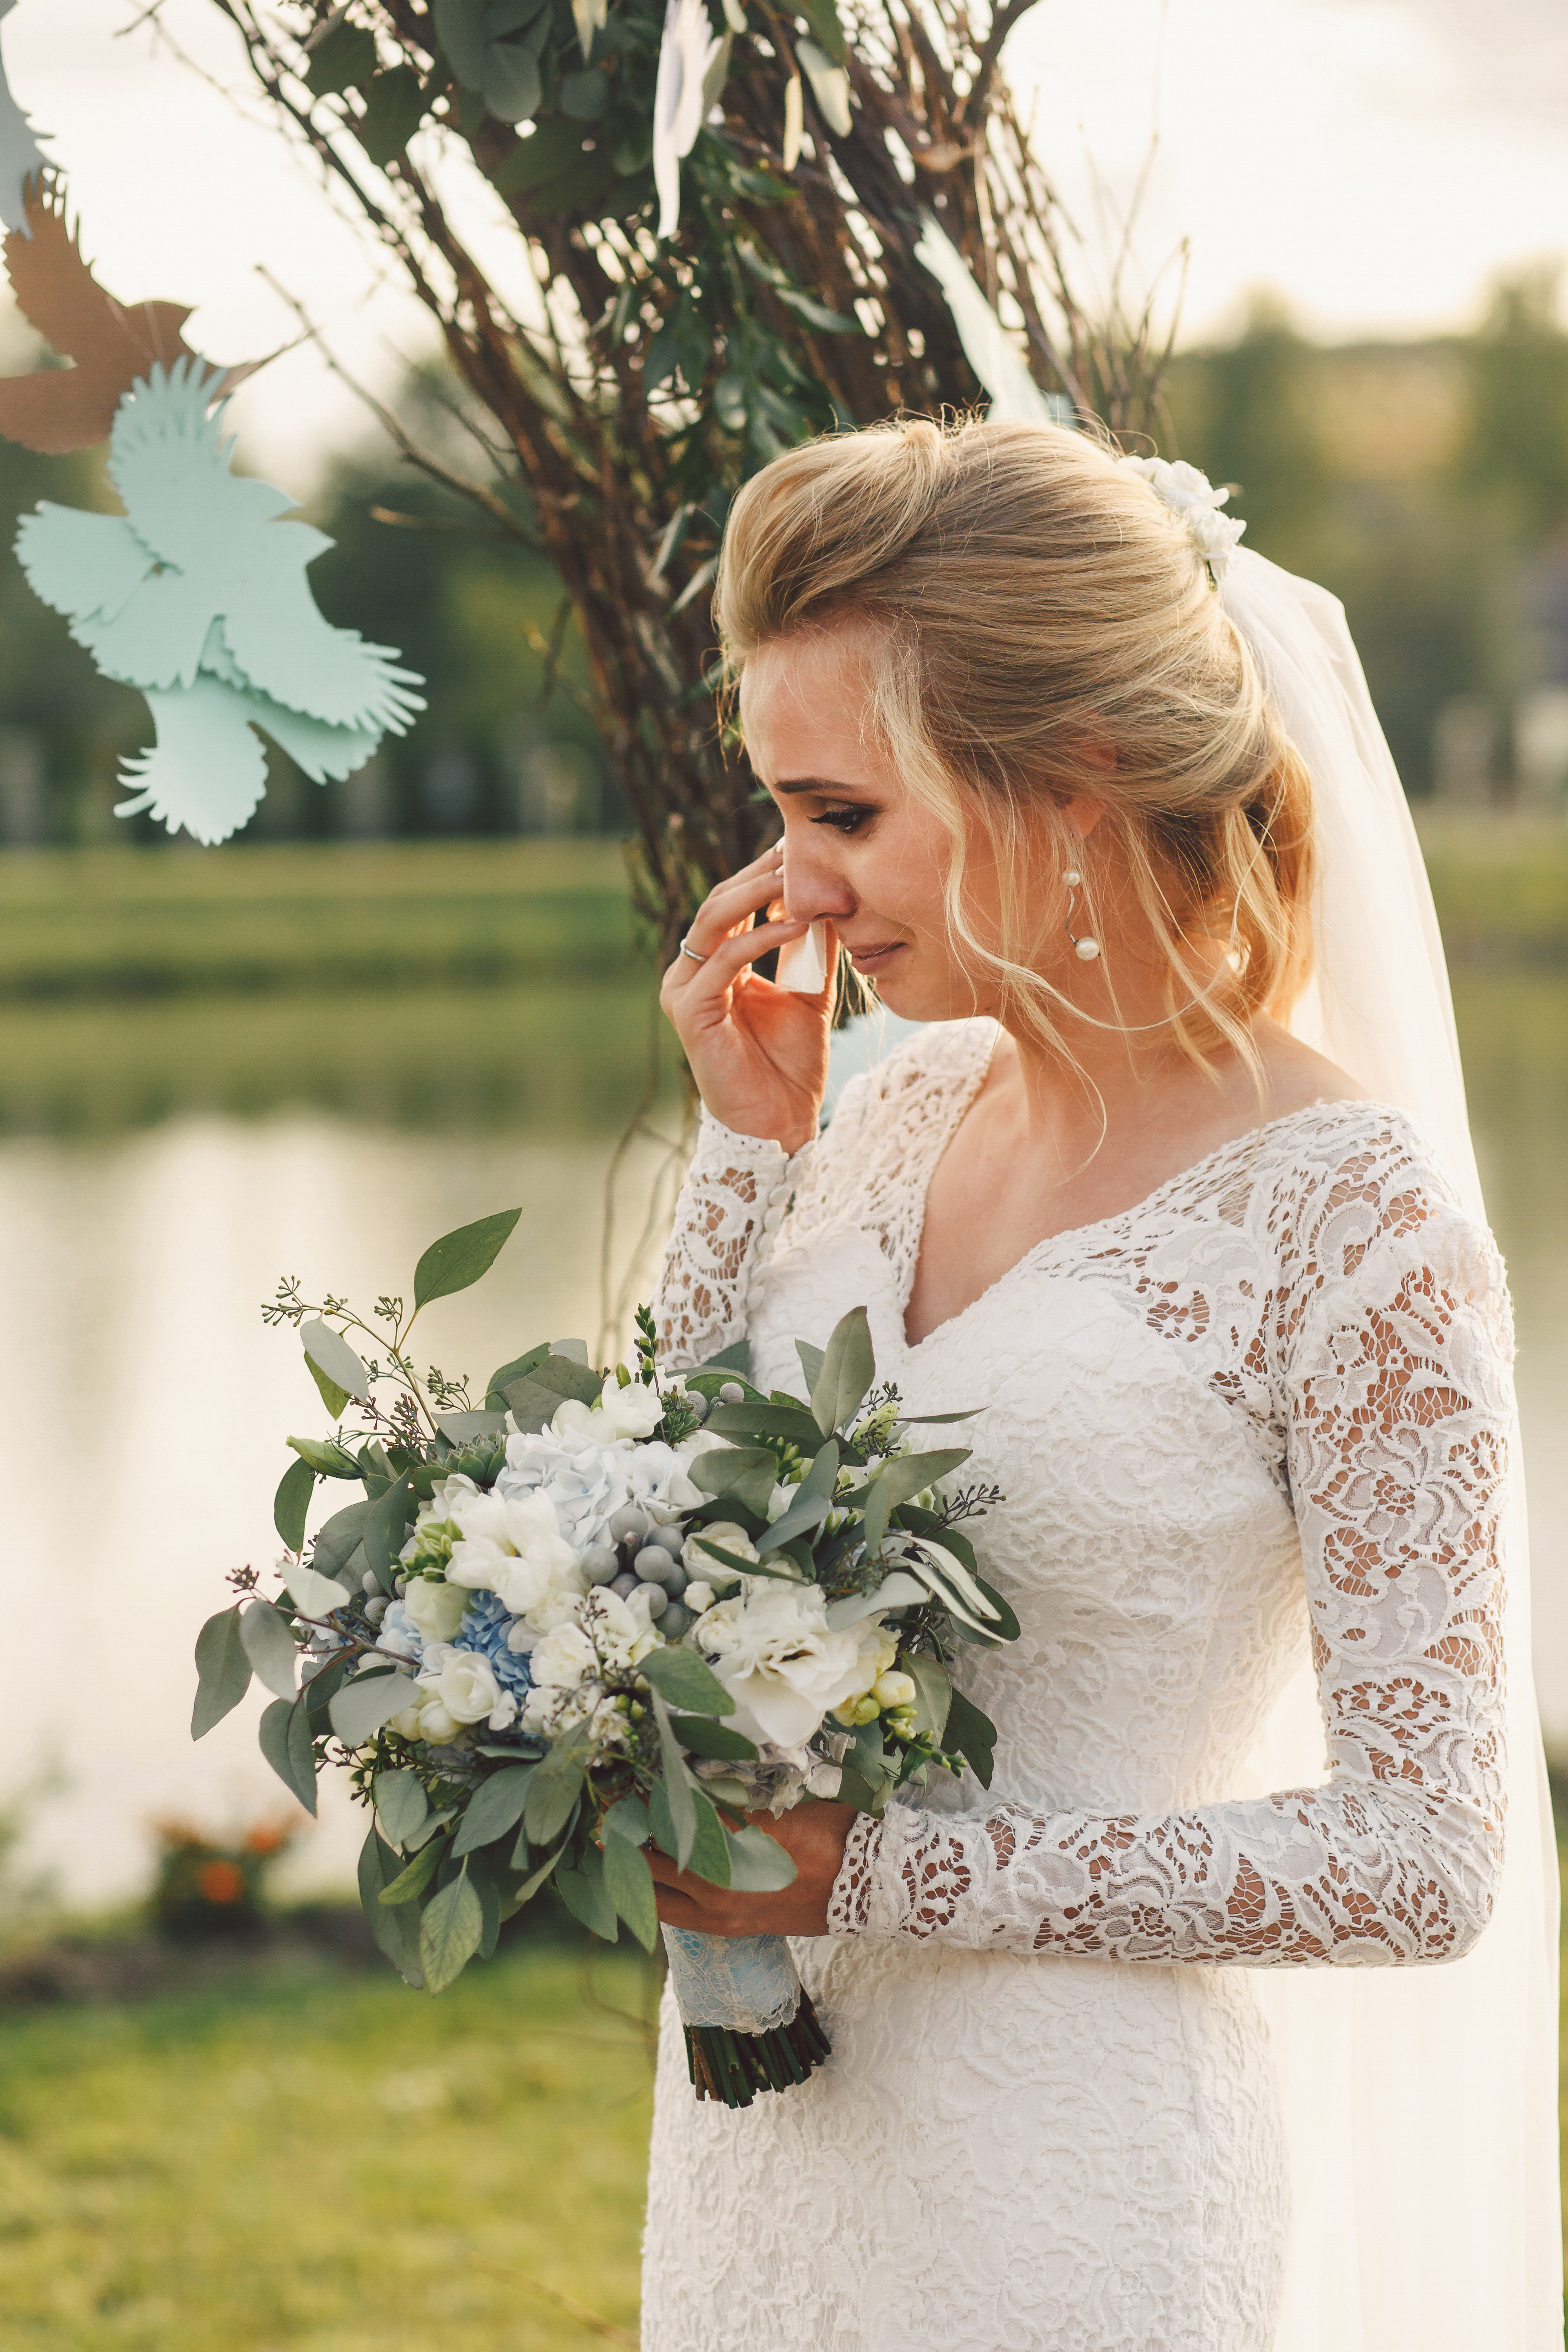 Eine weinende Frau bei ihrer Hochzeit | Quelle: Shutterstock